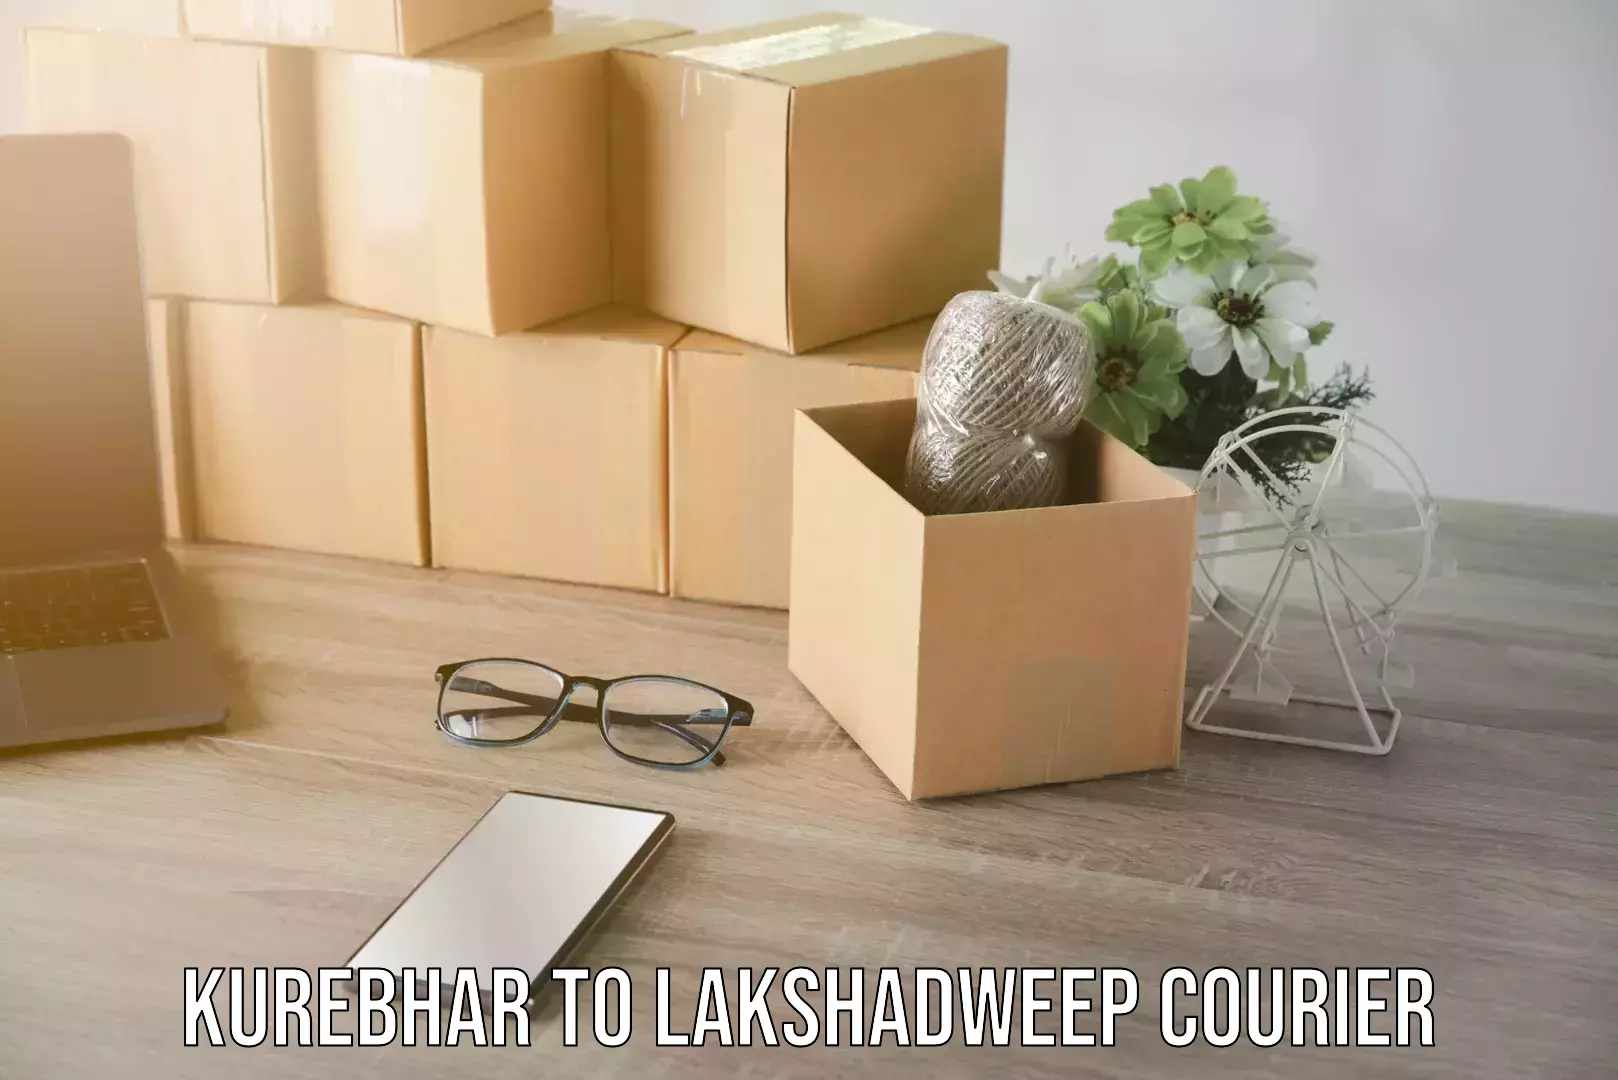 Furniture moving experts Kurebhar to Lakshadweep